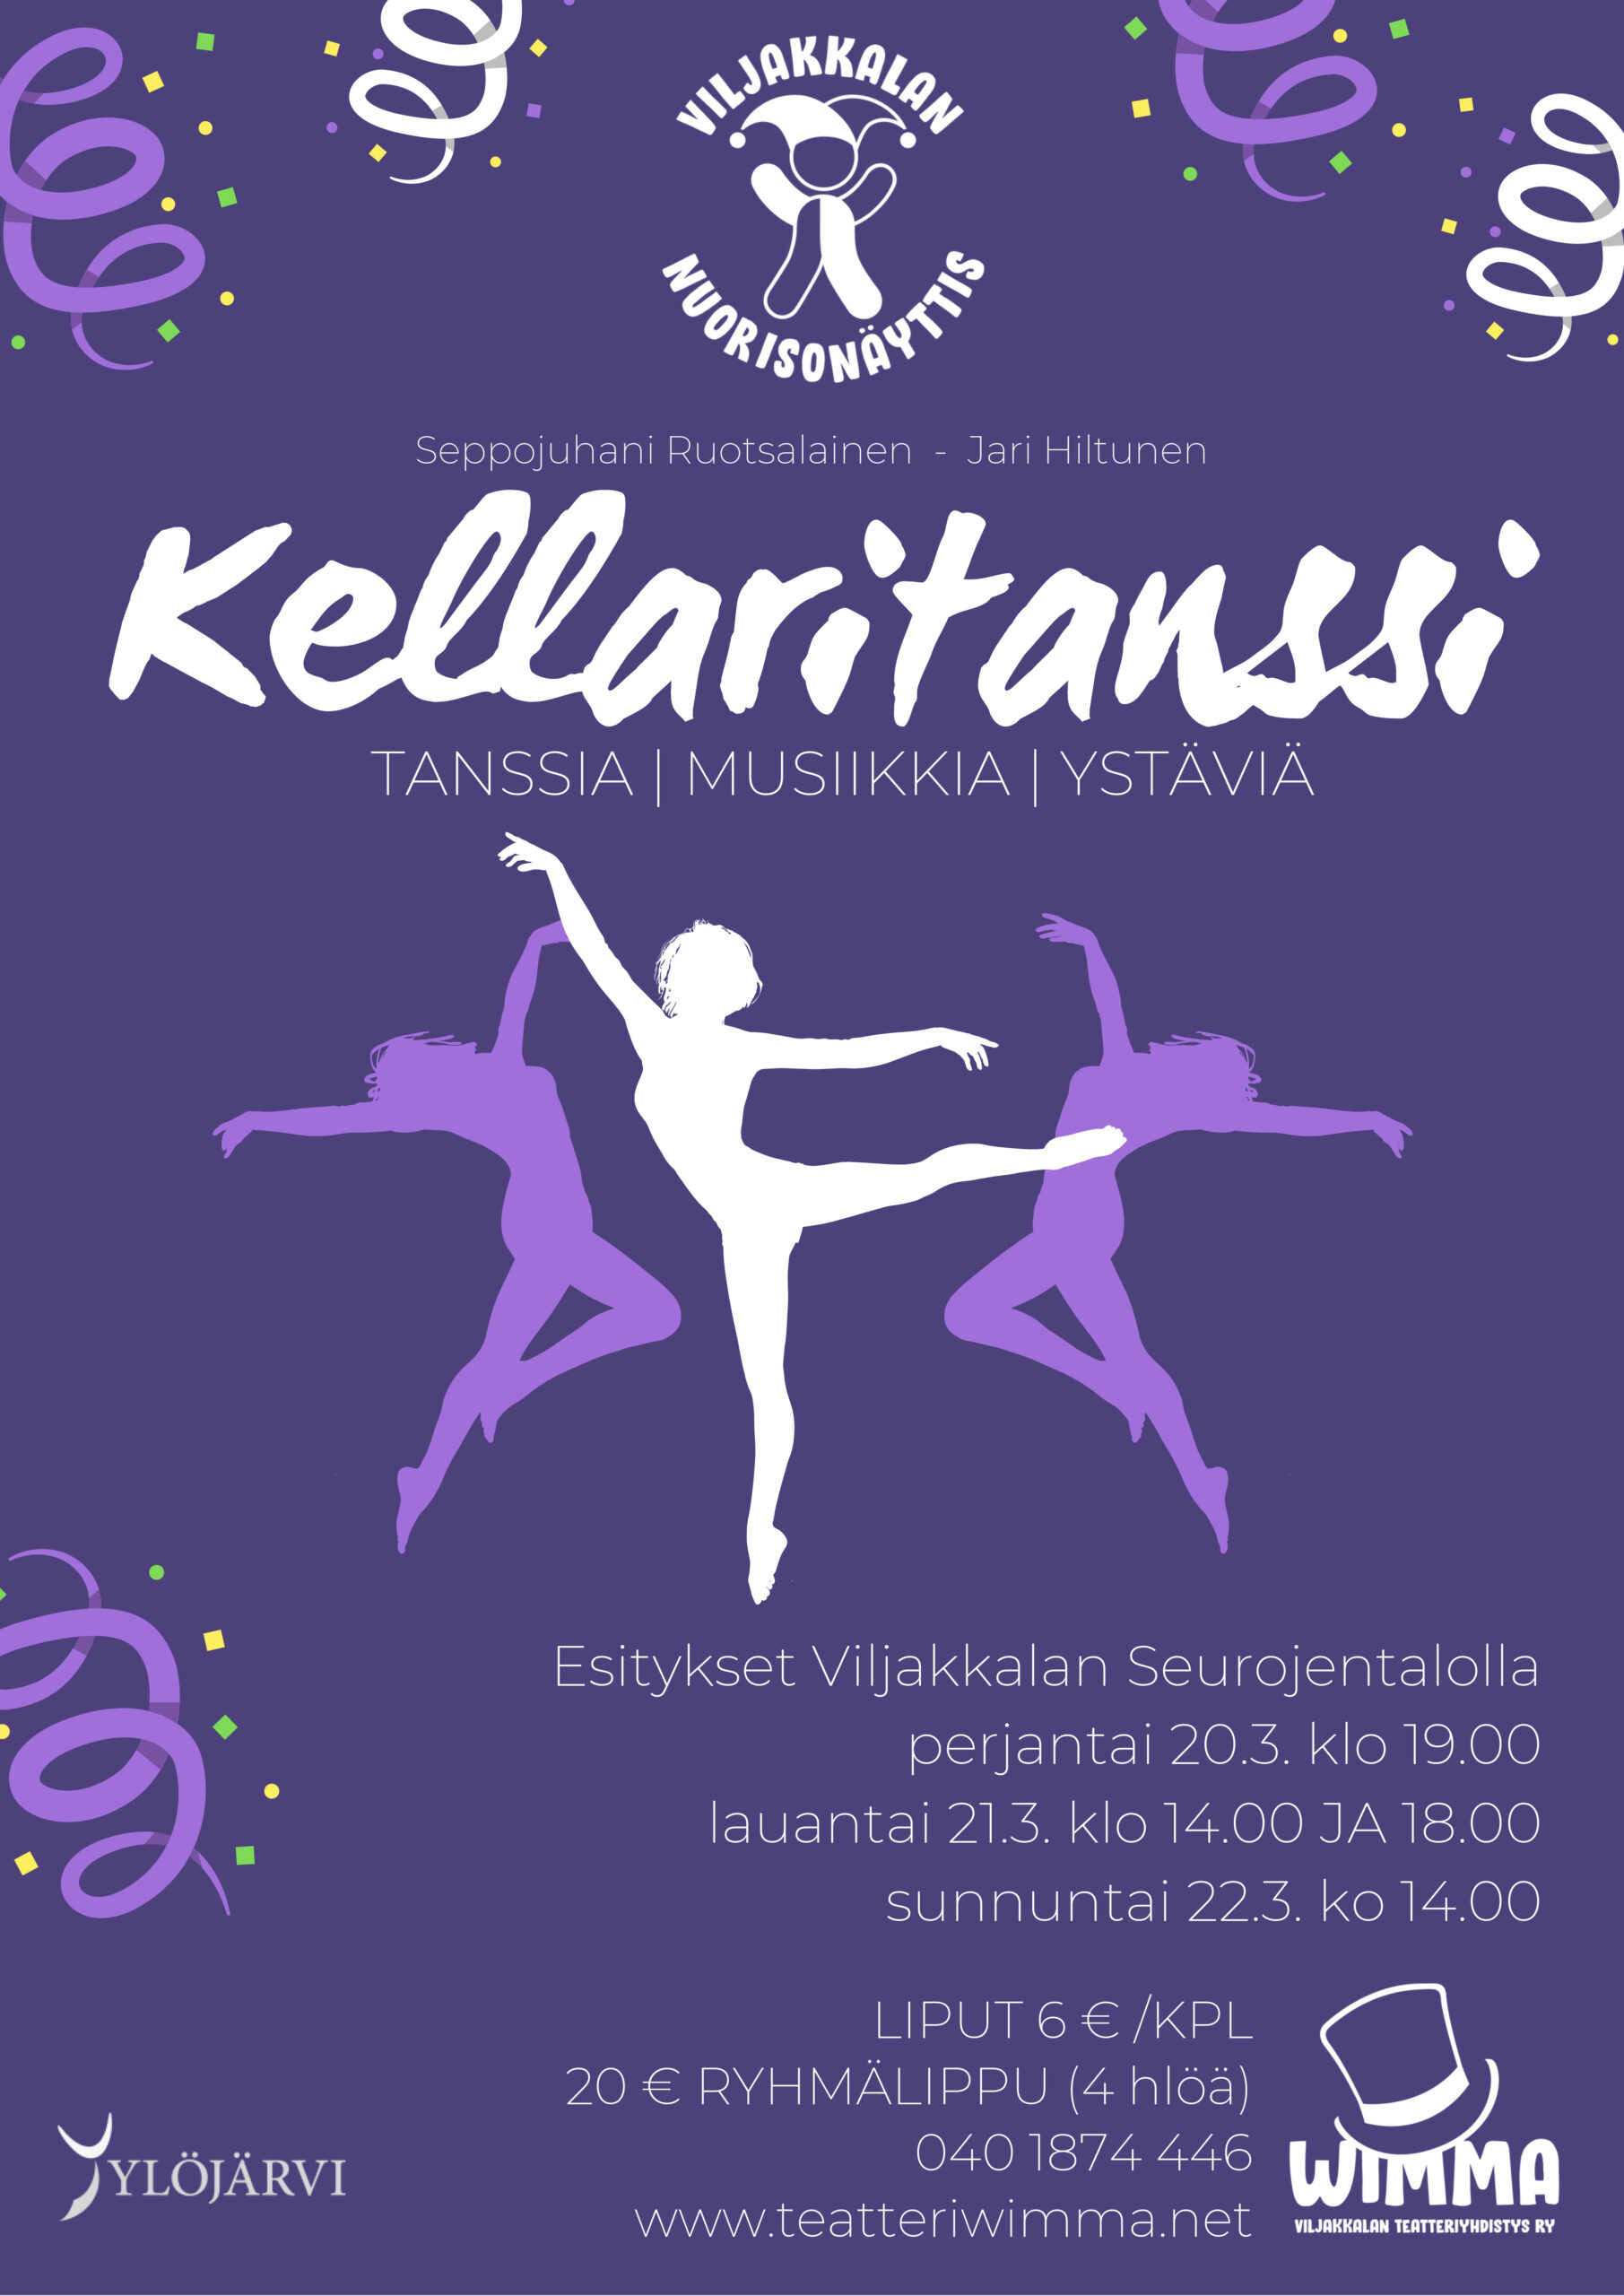 Keväältä peruuntunut Viljakkalan Nuorisonäyttiksen Kellaritanssi saa ensi-iltansa 21.11.